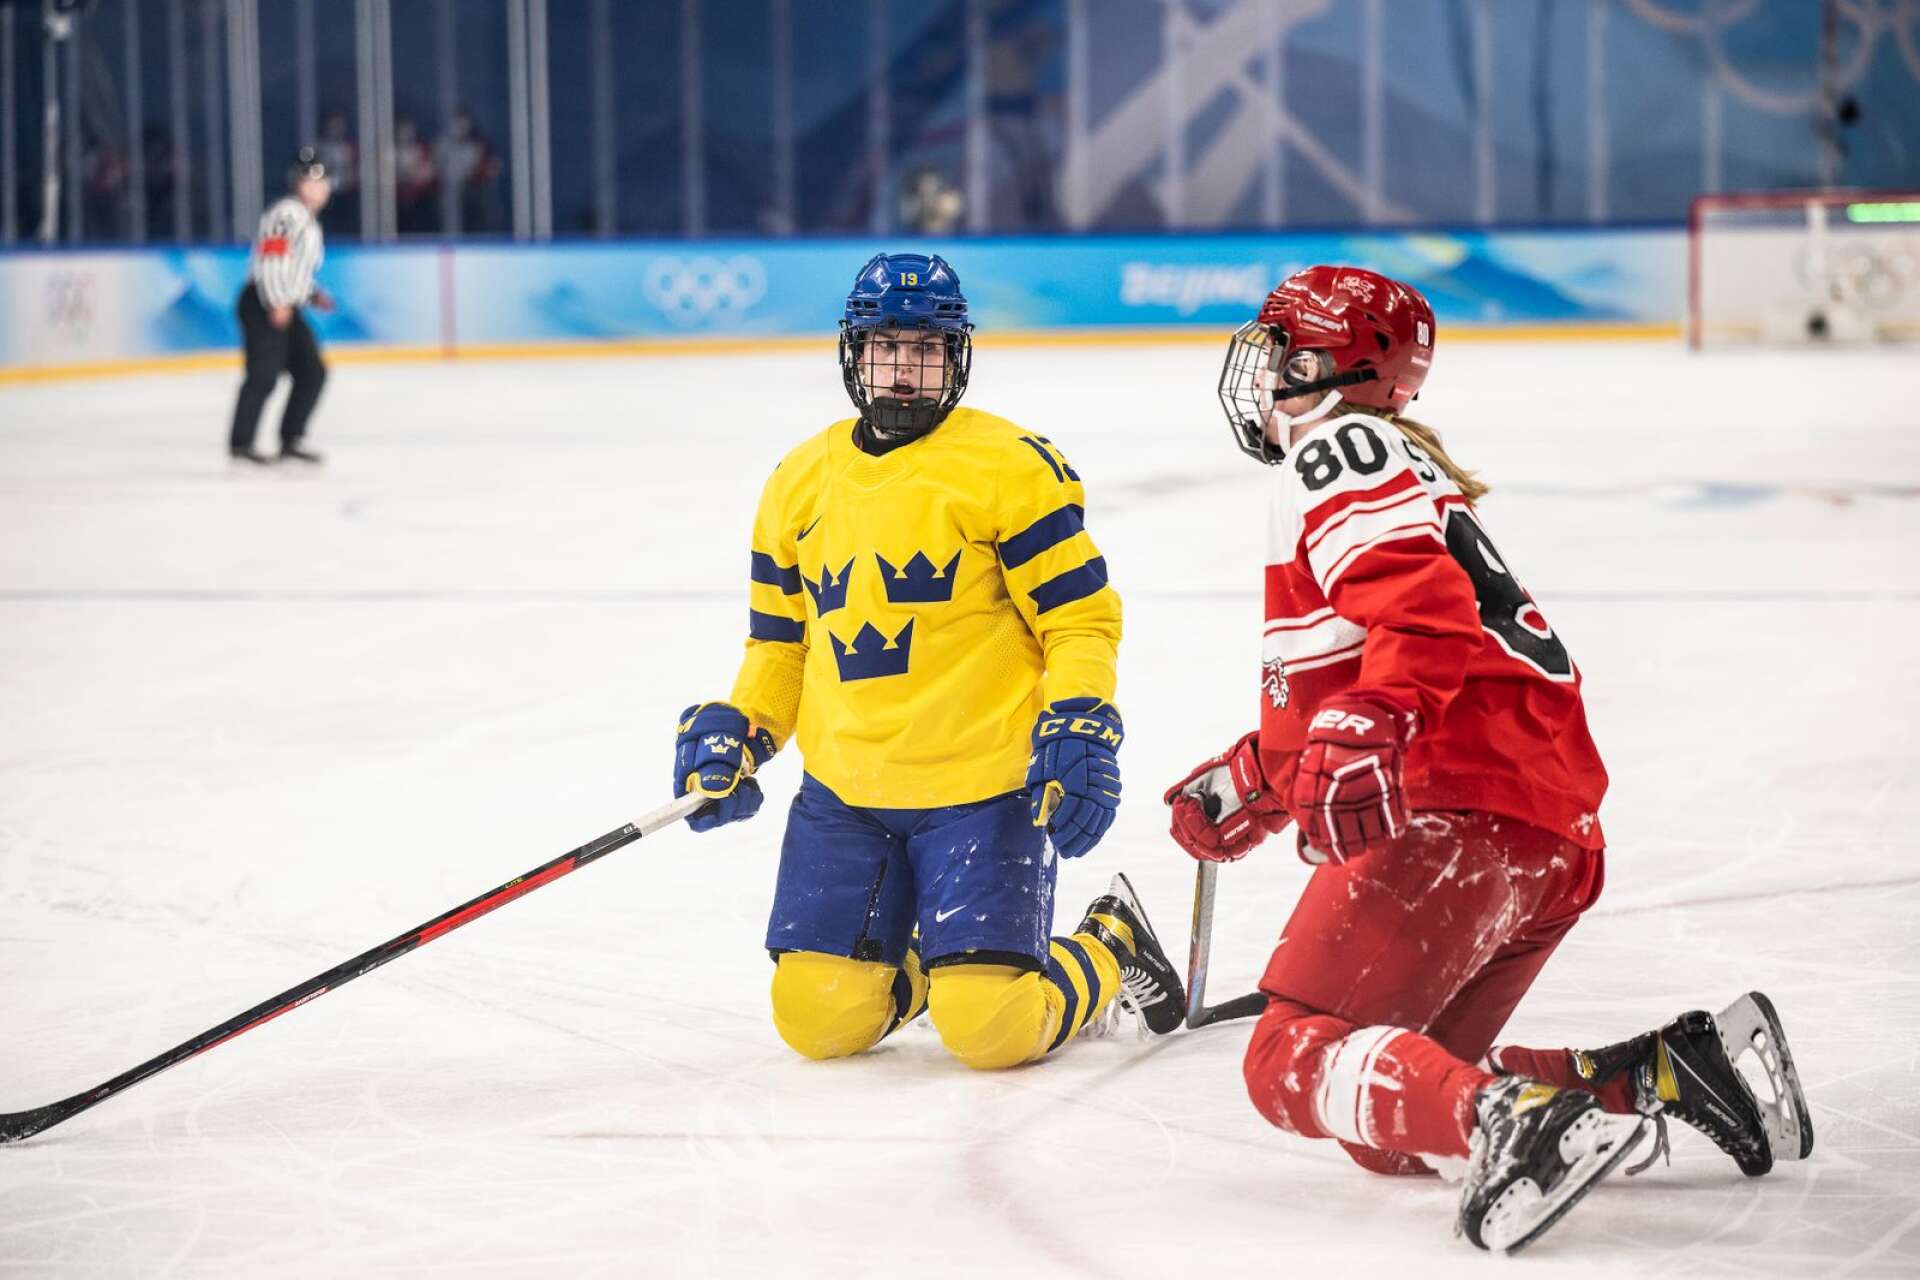 Sverige med Emma Murén tog sig till OS-kvartsfinal genom vinst mot Danmark med Julie Østergaard.